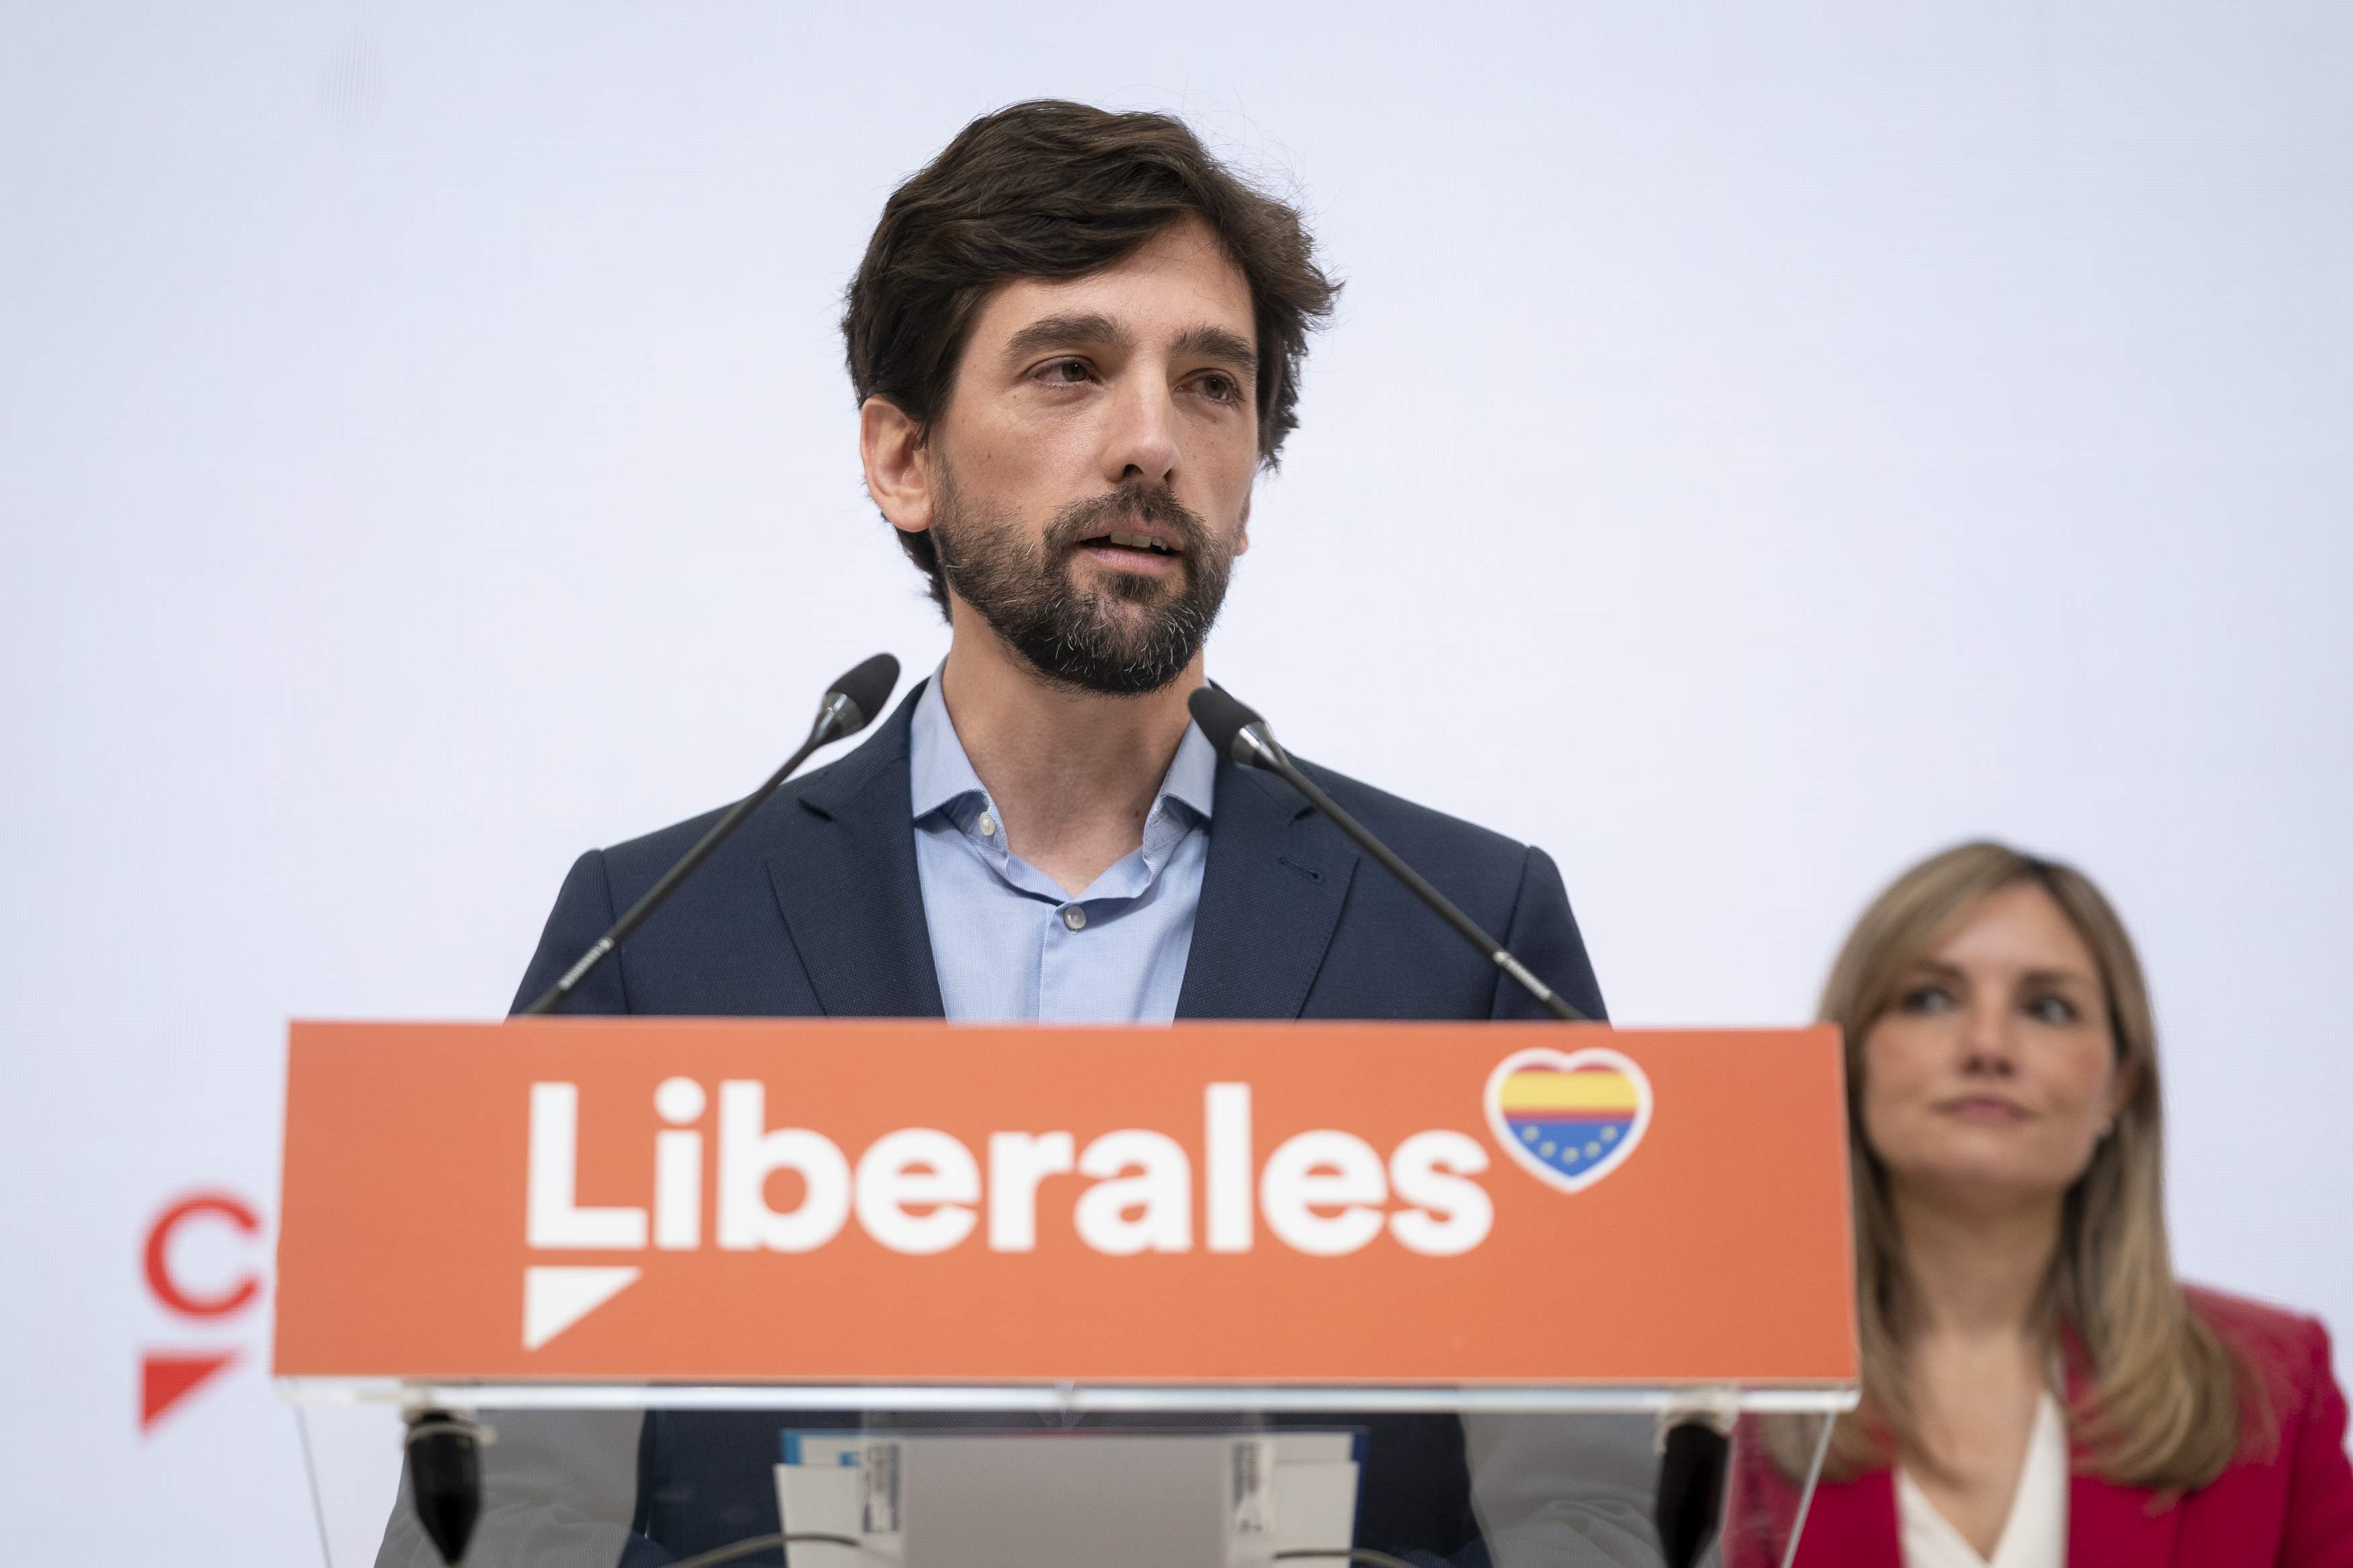 Dos eurodiputats de Ciutadans van incomplir la carta ètica en no donar part del seu sou al partit